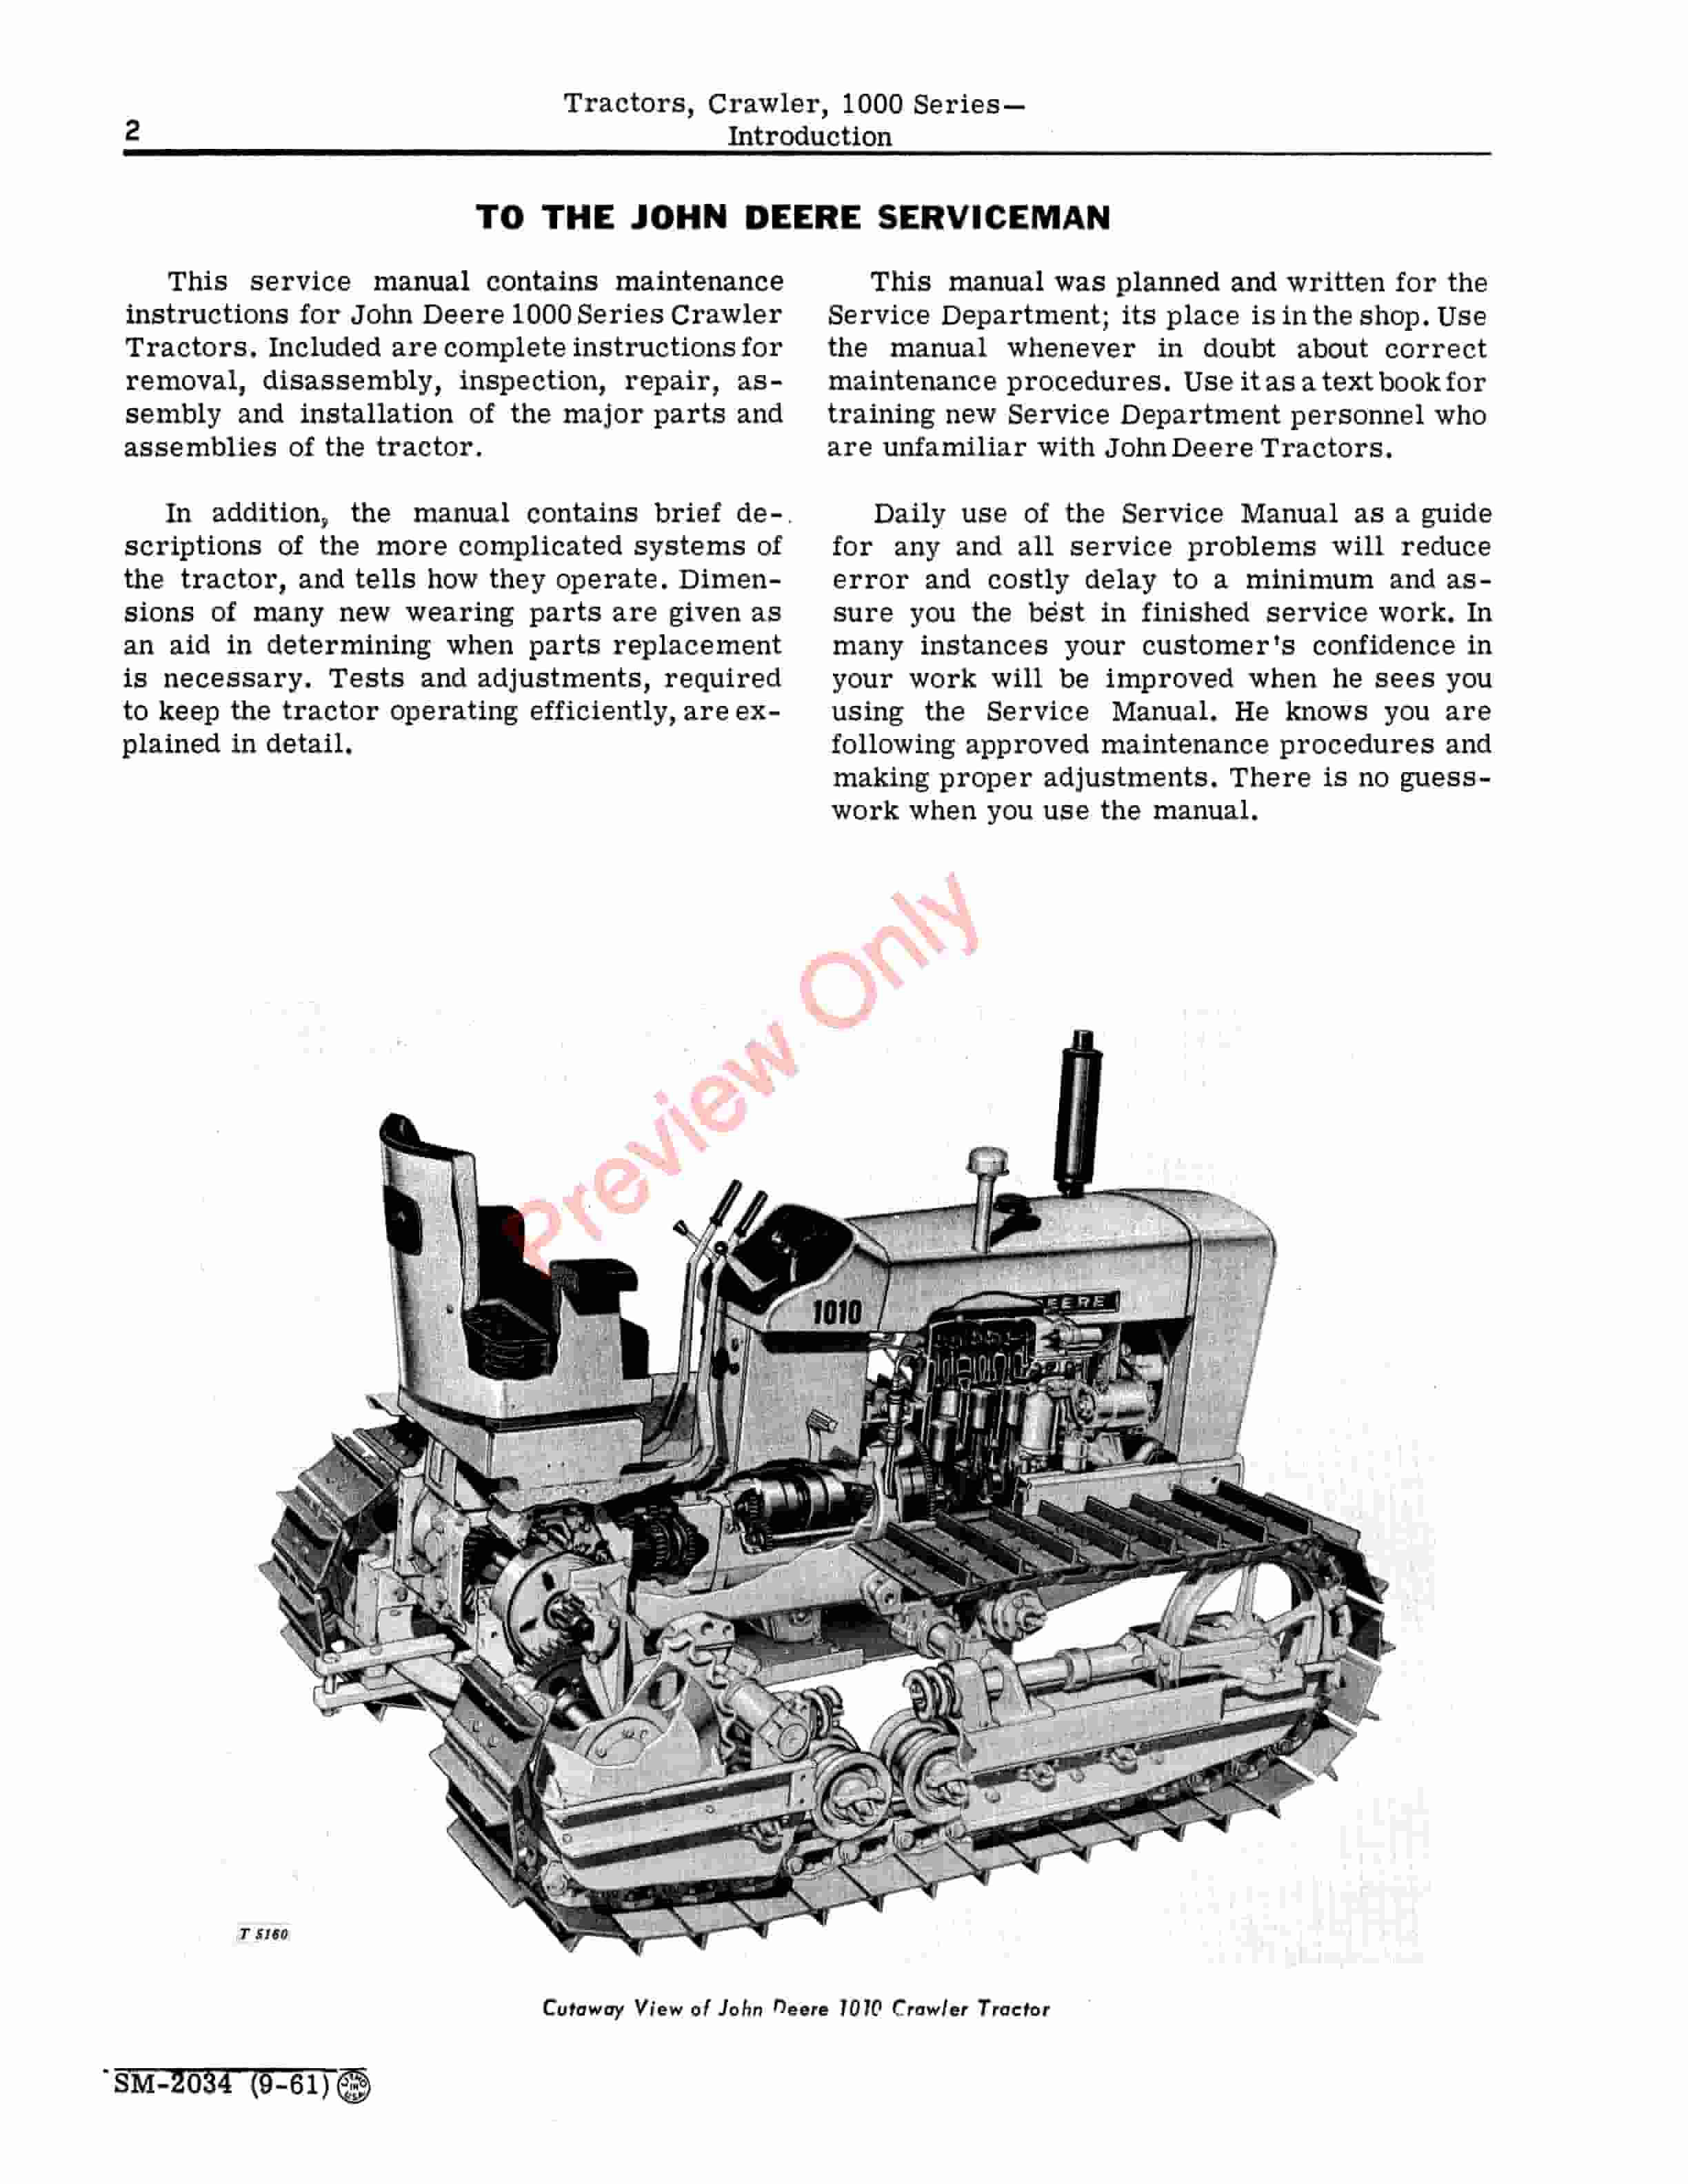 John Deere 1000 Series Crawler Tractors Service Manual SM2034 01JAN64 4